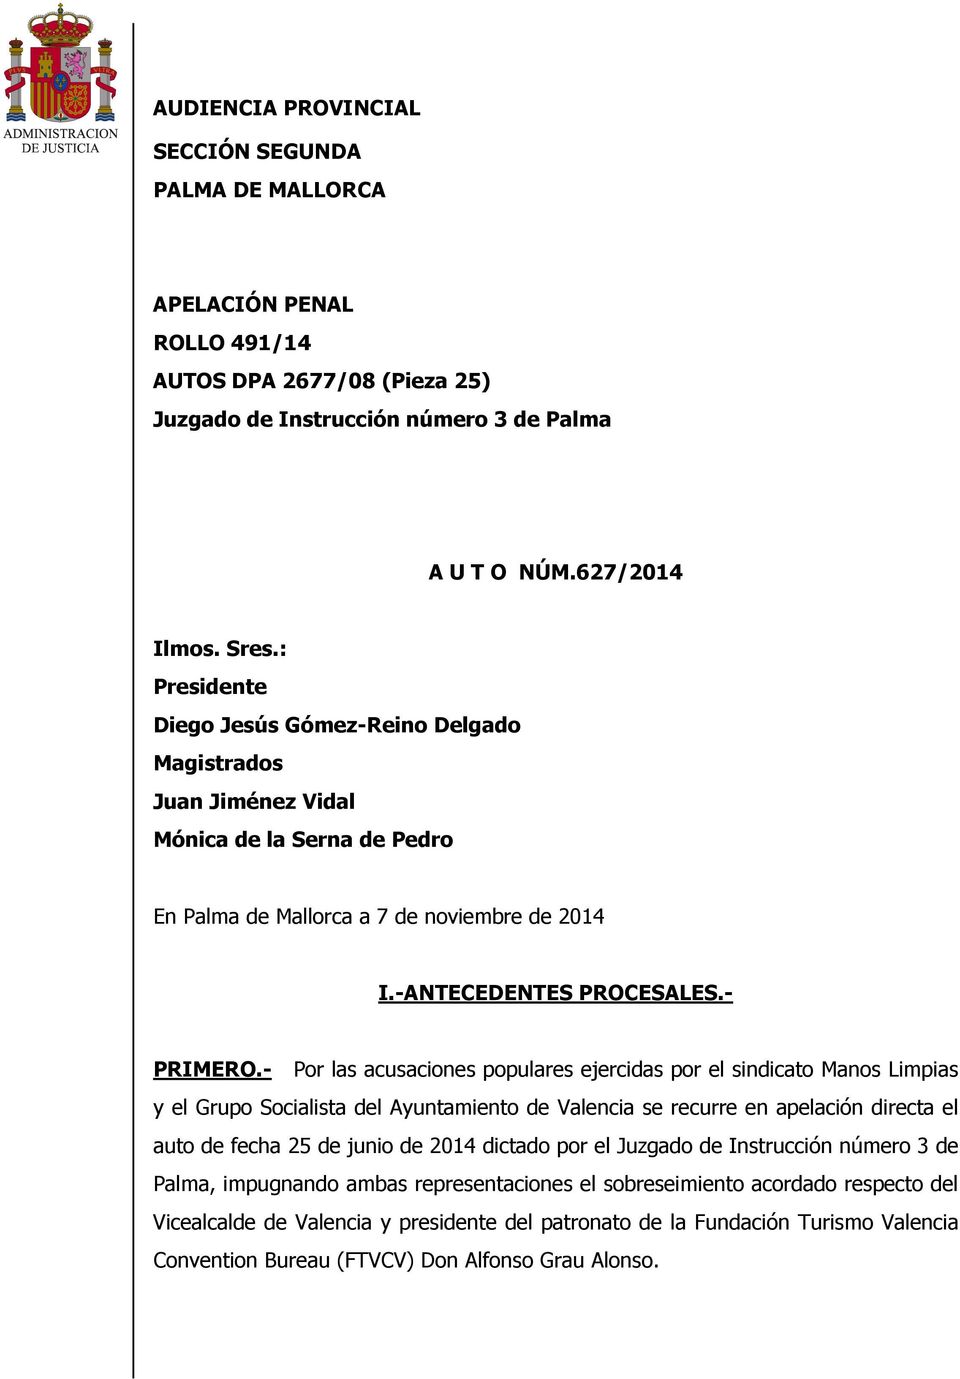 - Por las acusaciones populares ejercidas por el sindicato Manos Limpias y el Grupo Socialista del Ayuntamiento de Valencia se recurre en apelación directa el auto de fecha 25 de junio de 2014